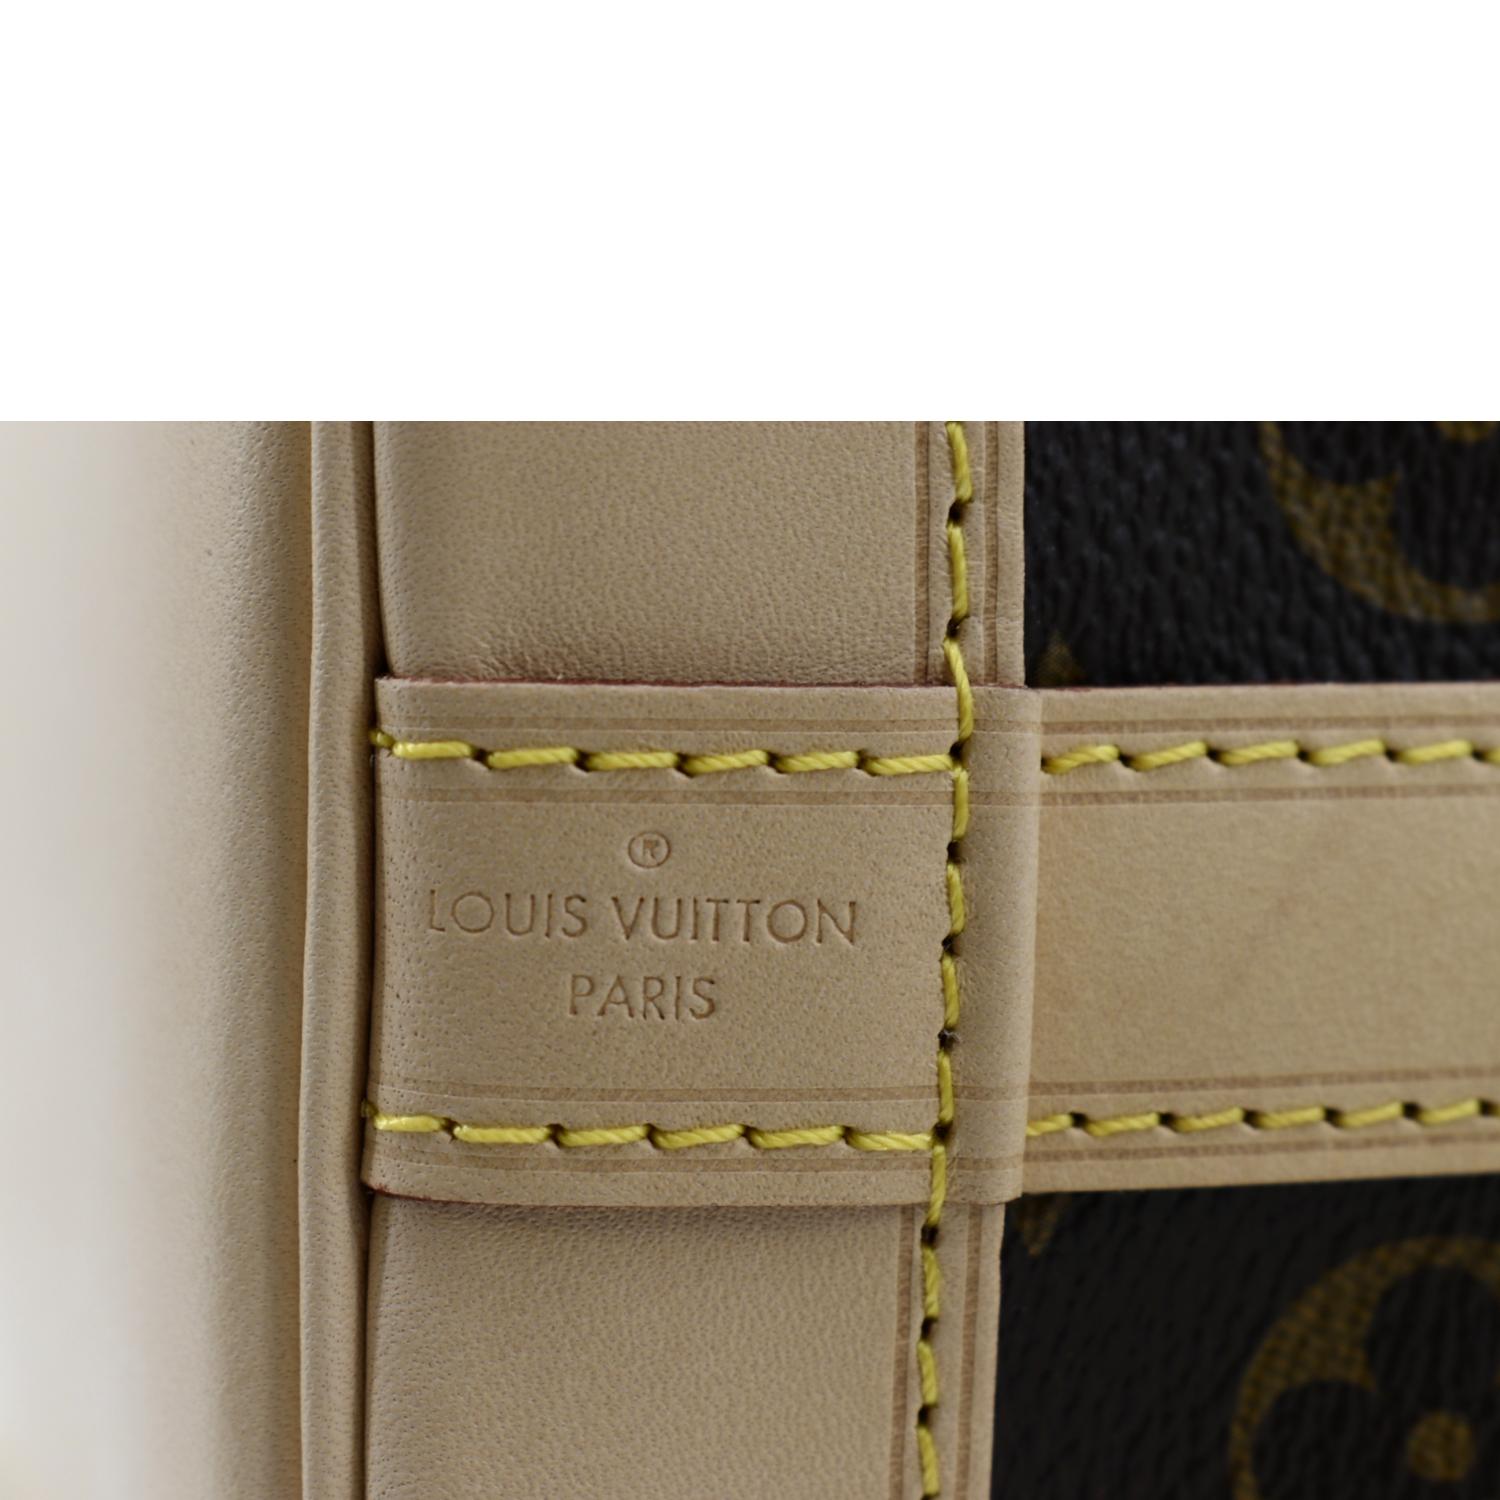 Handbags Louis Vuitton Louis Vuitton Monogram Noe Bb Shoulder Bag M40817 LV Auth 48076